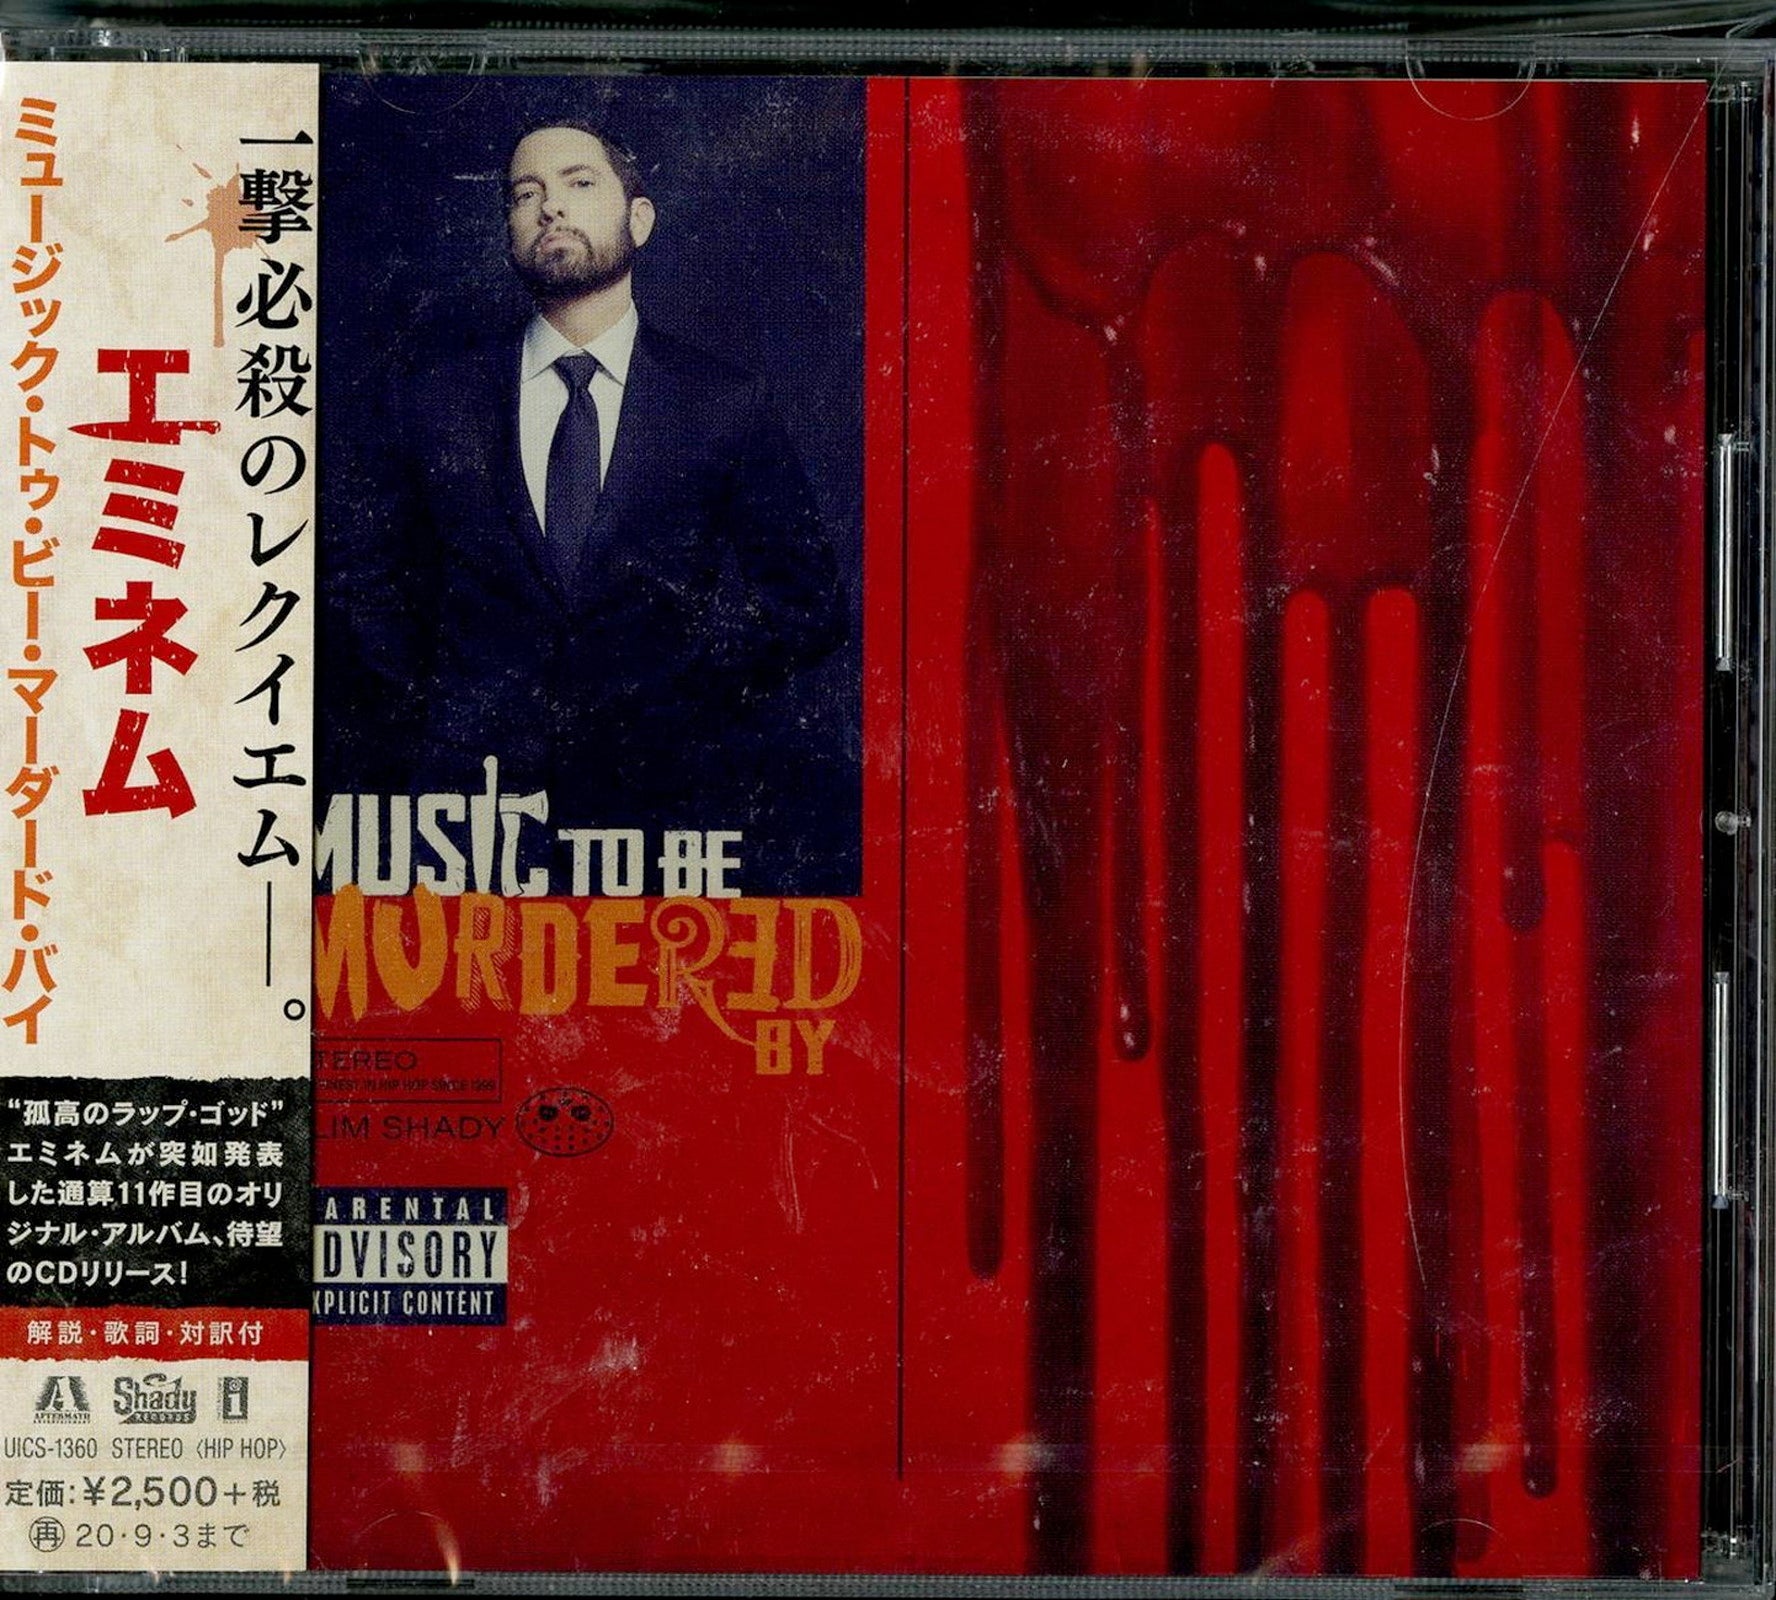 Eminem - Music To Be Murdered By - Japan CD – CDs Vinyl Japan Store CD,  Eminem, Hip-Hop, Rap & Hip-Hop CDs